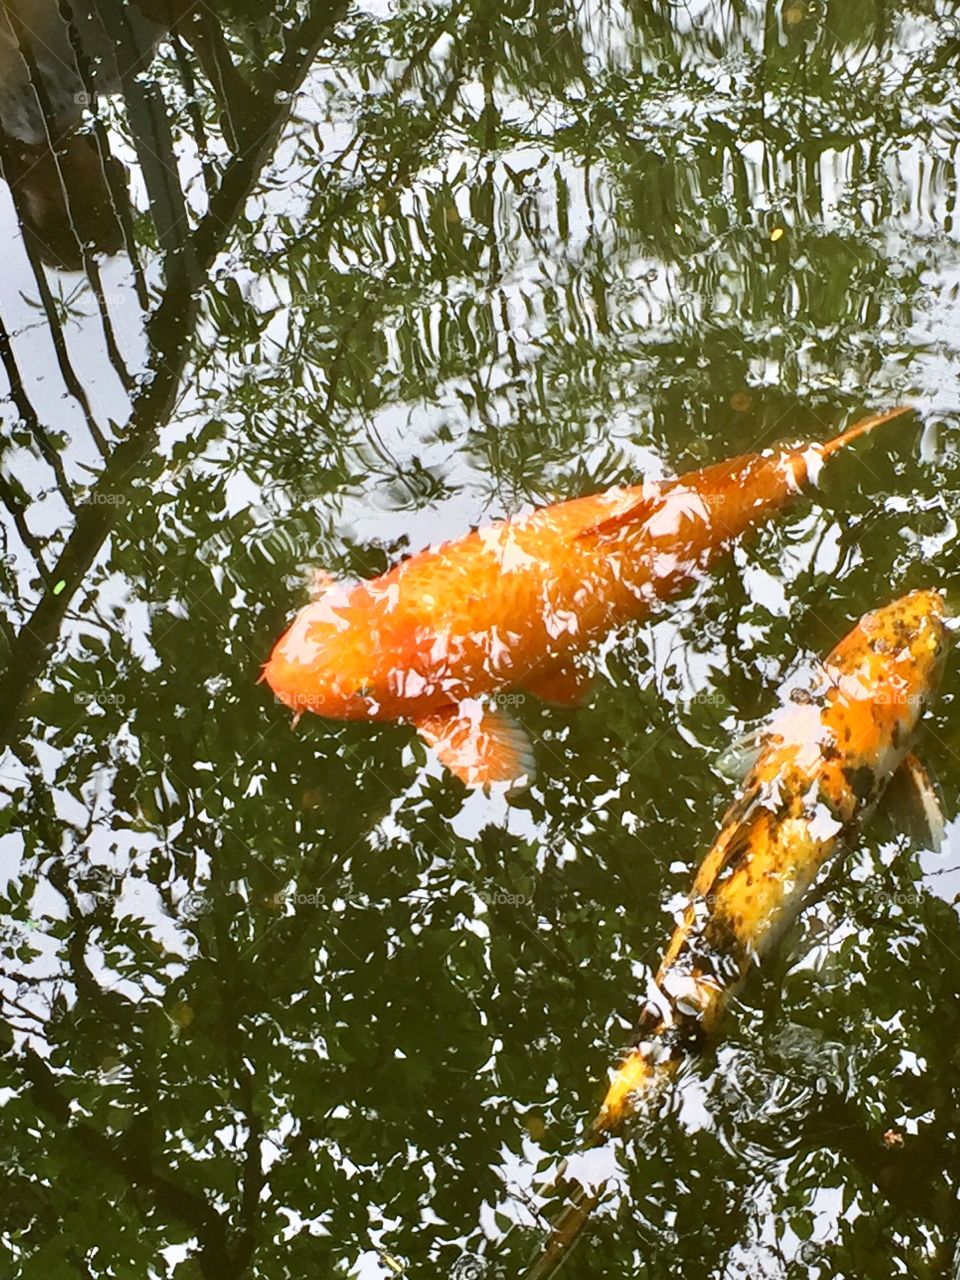 Fish swimming in a stream near the Alamo.
San Antonio, TX.